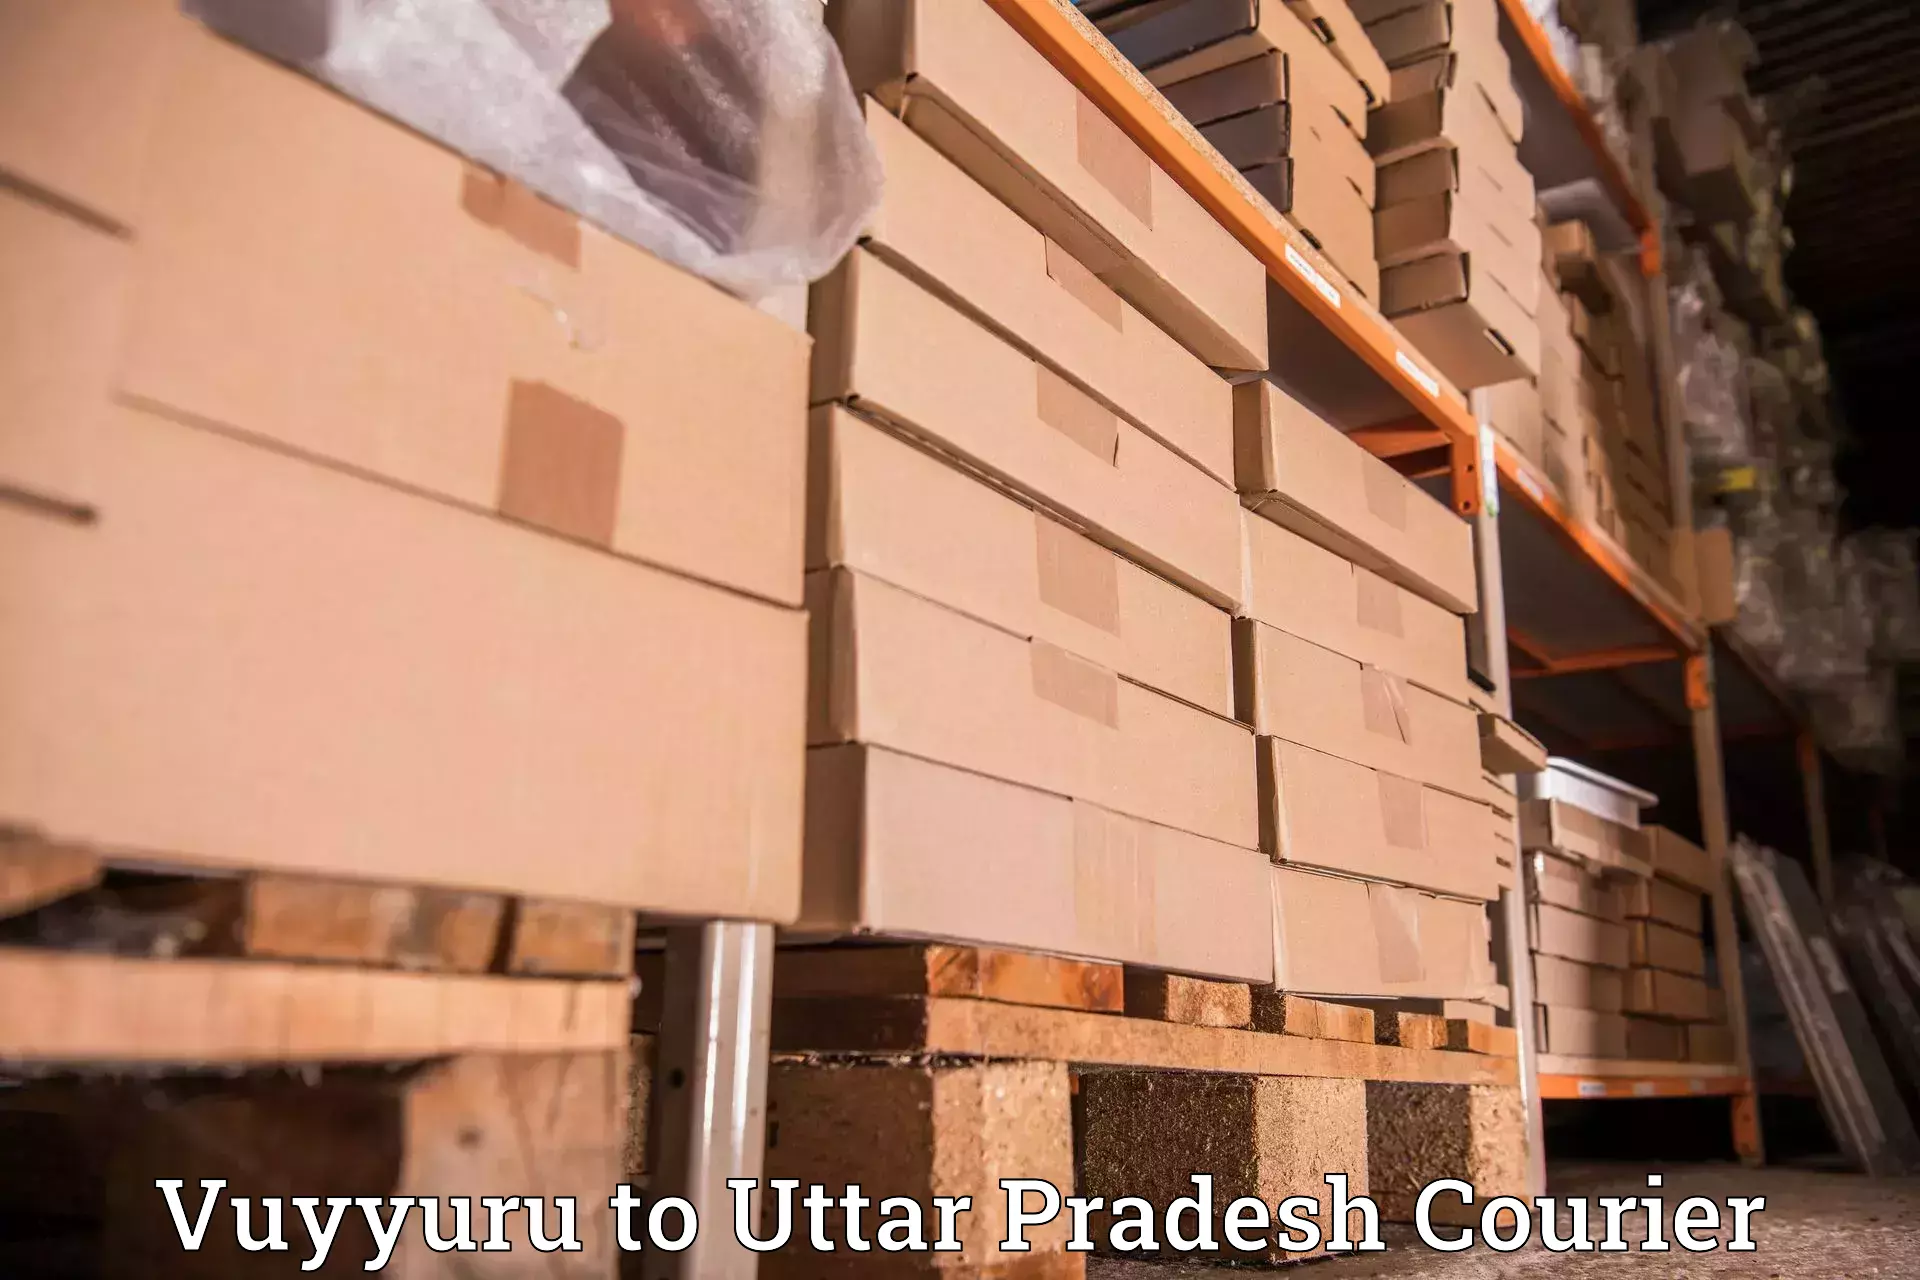 Next-day delivery options Vuyyuru to Ayodhya